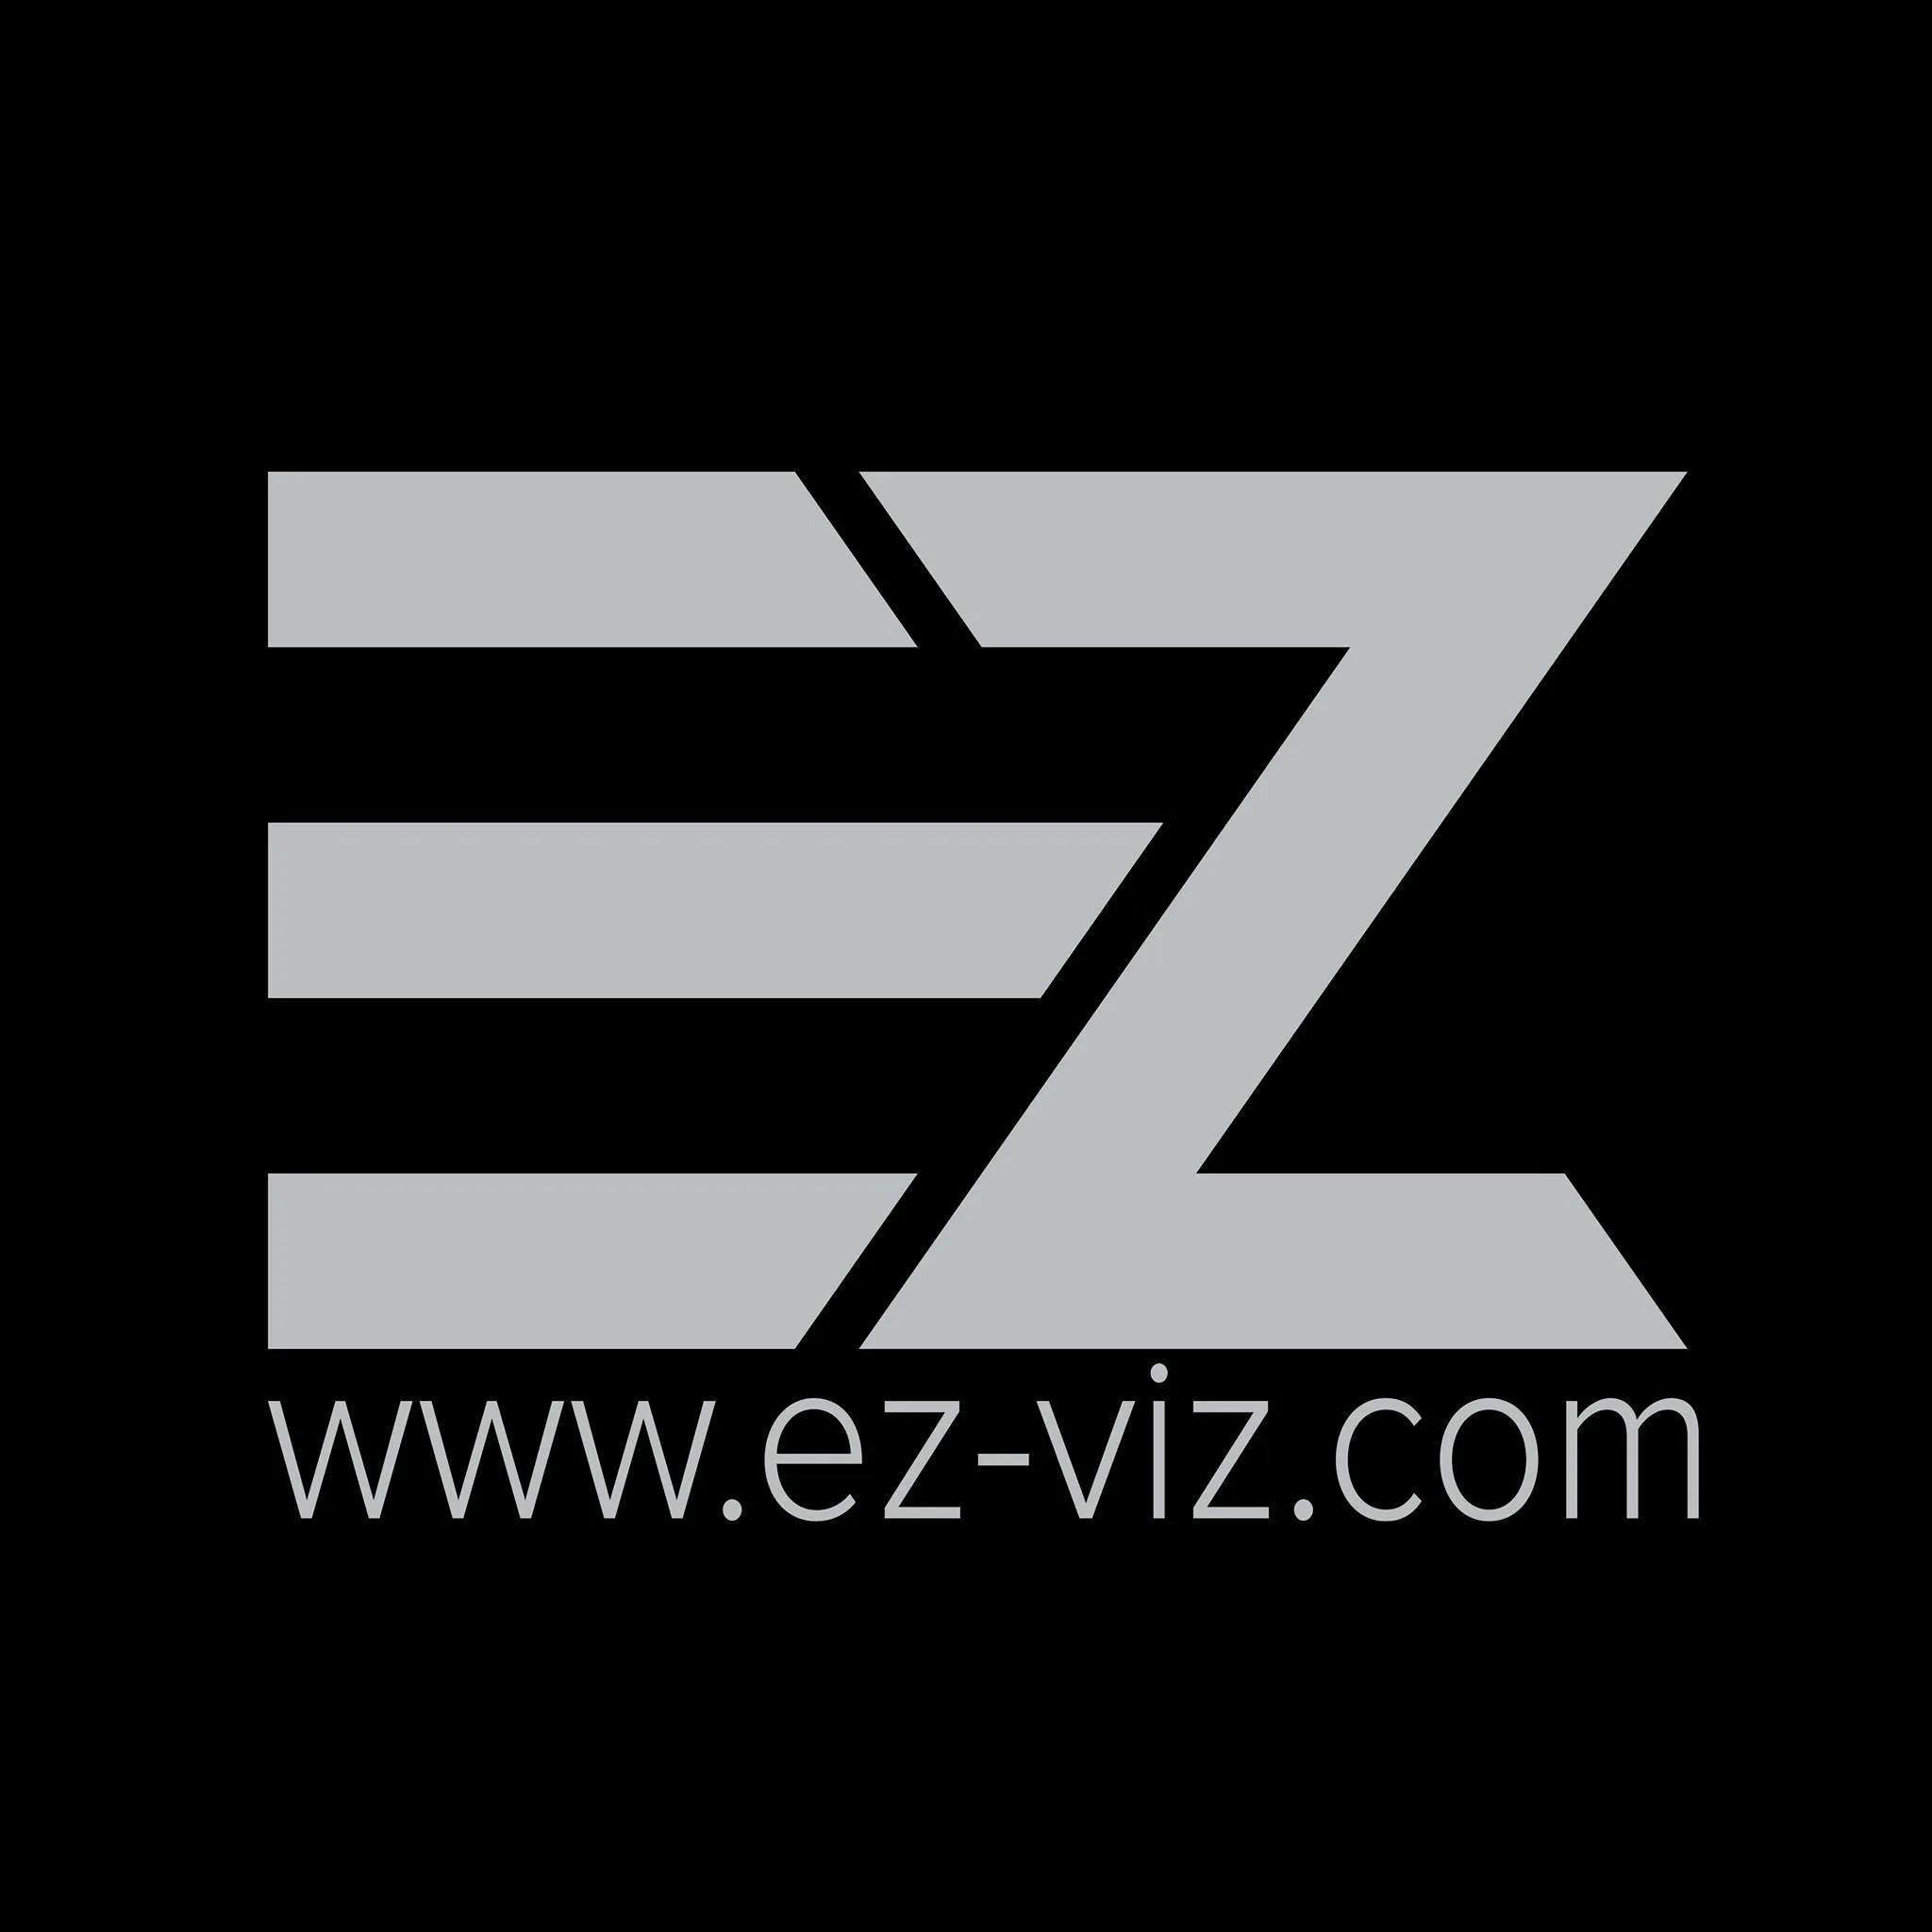 Công ty Ez viz - đối tác của MindX Space